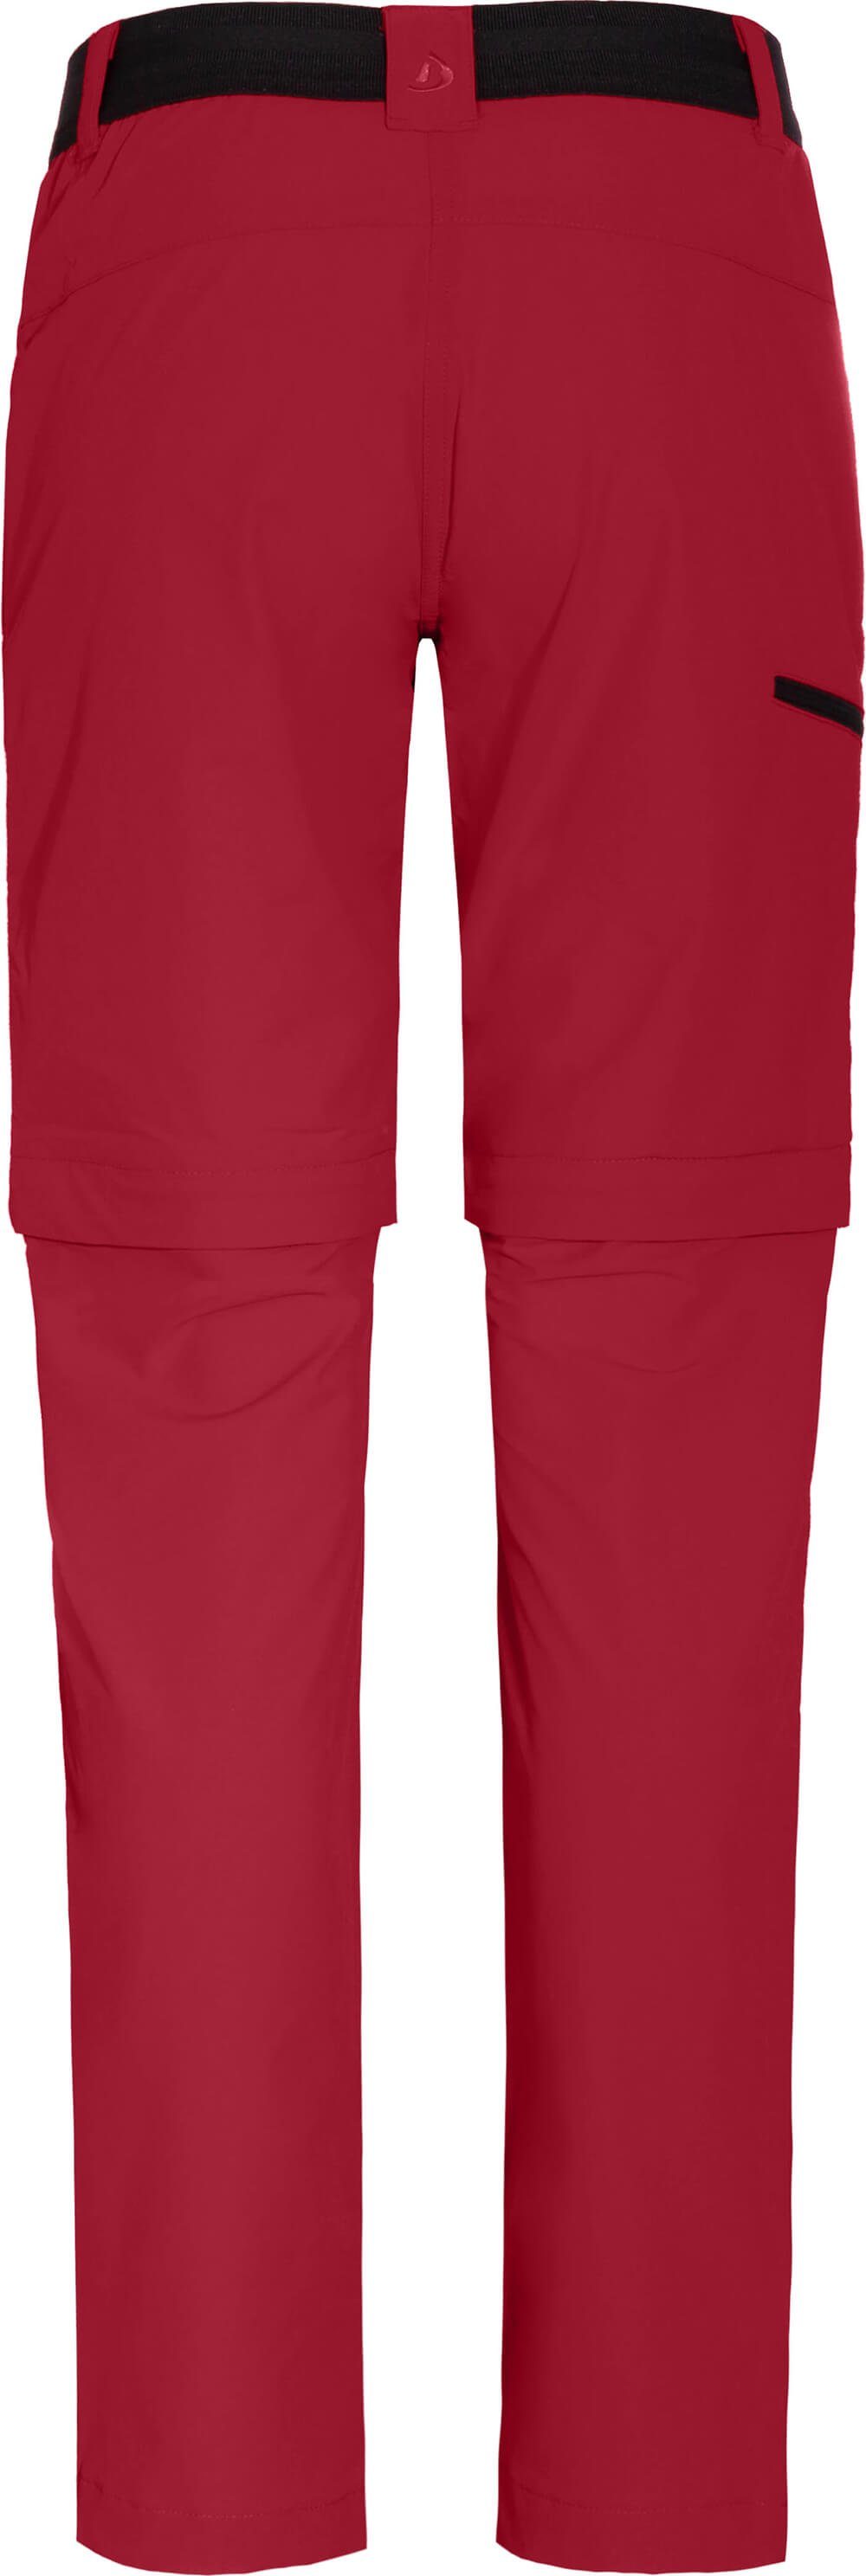 Wanderhose, Damen Zip-off-Hose Normalgrößen, leicht, strapazierfähig, Zipp-Off COMFORT VIDAA Bergson rot